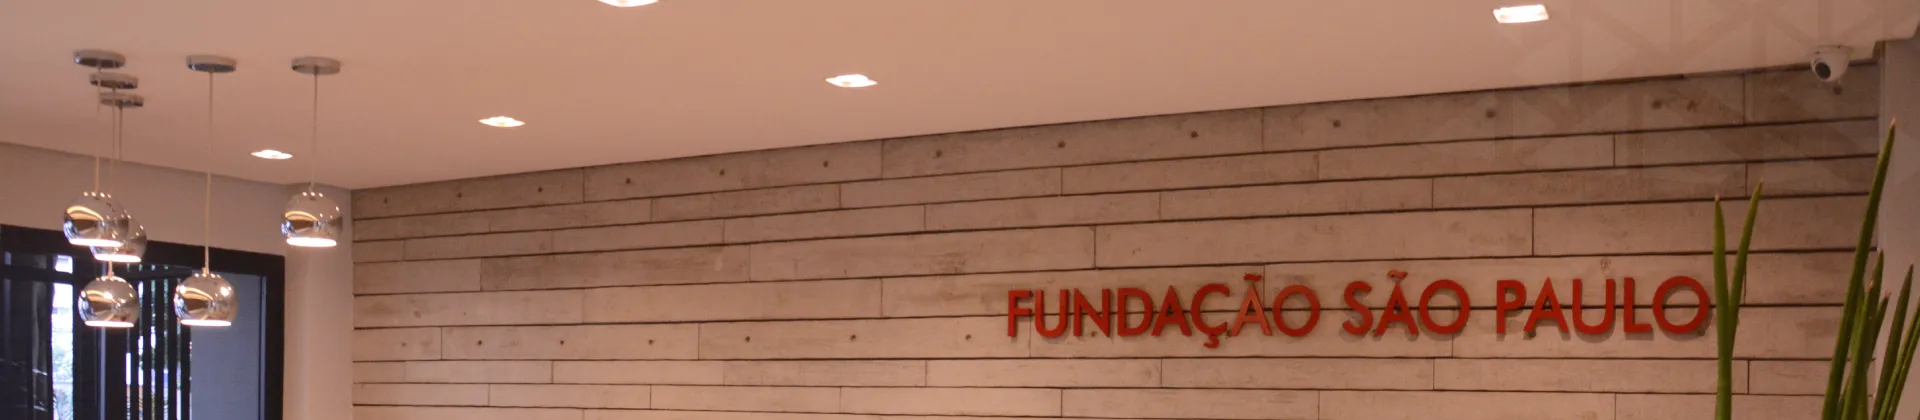 Imagem ilustrativa que mostra um detalhe da entrada da Fundação onde se lê 'Fundação São Paulo' na parede